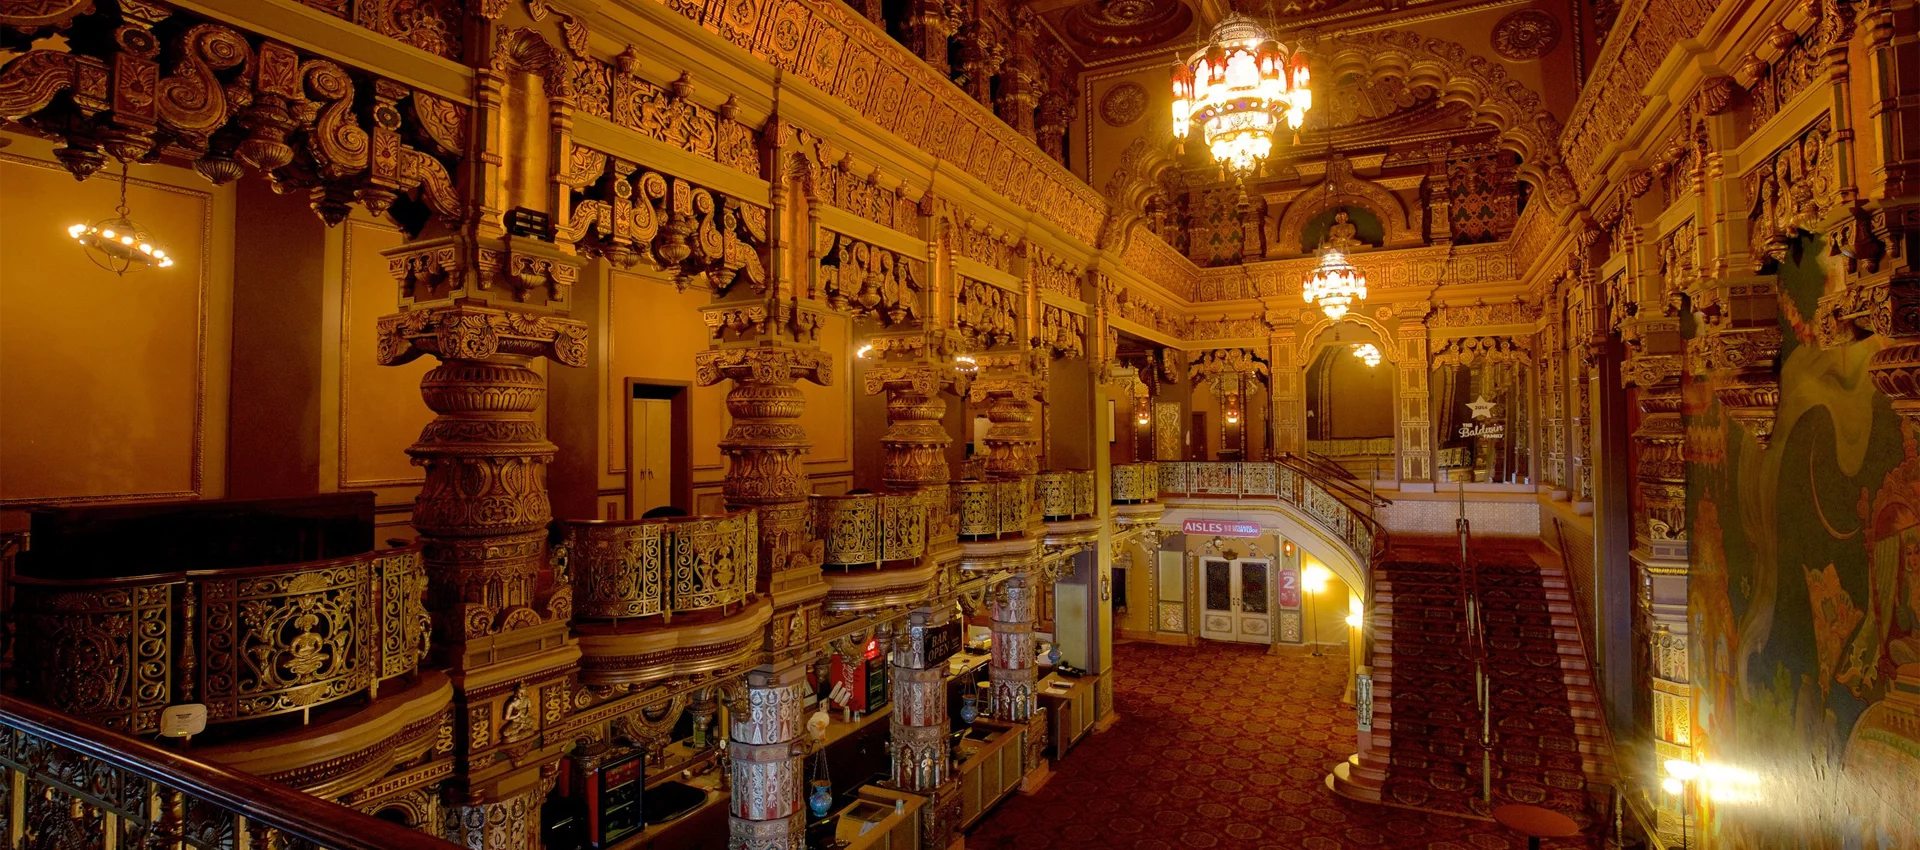 The Landmark Theatre lobby. | Photo Courtesy of Expedia